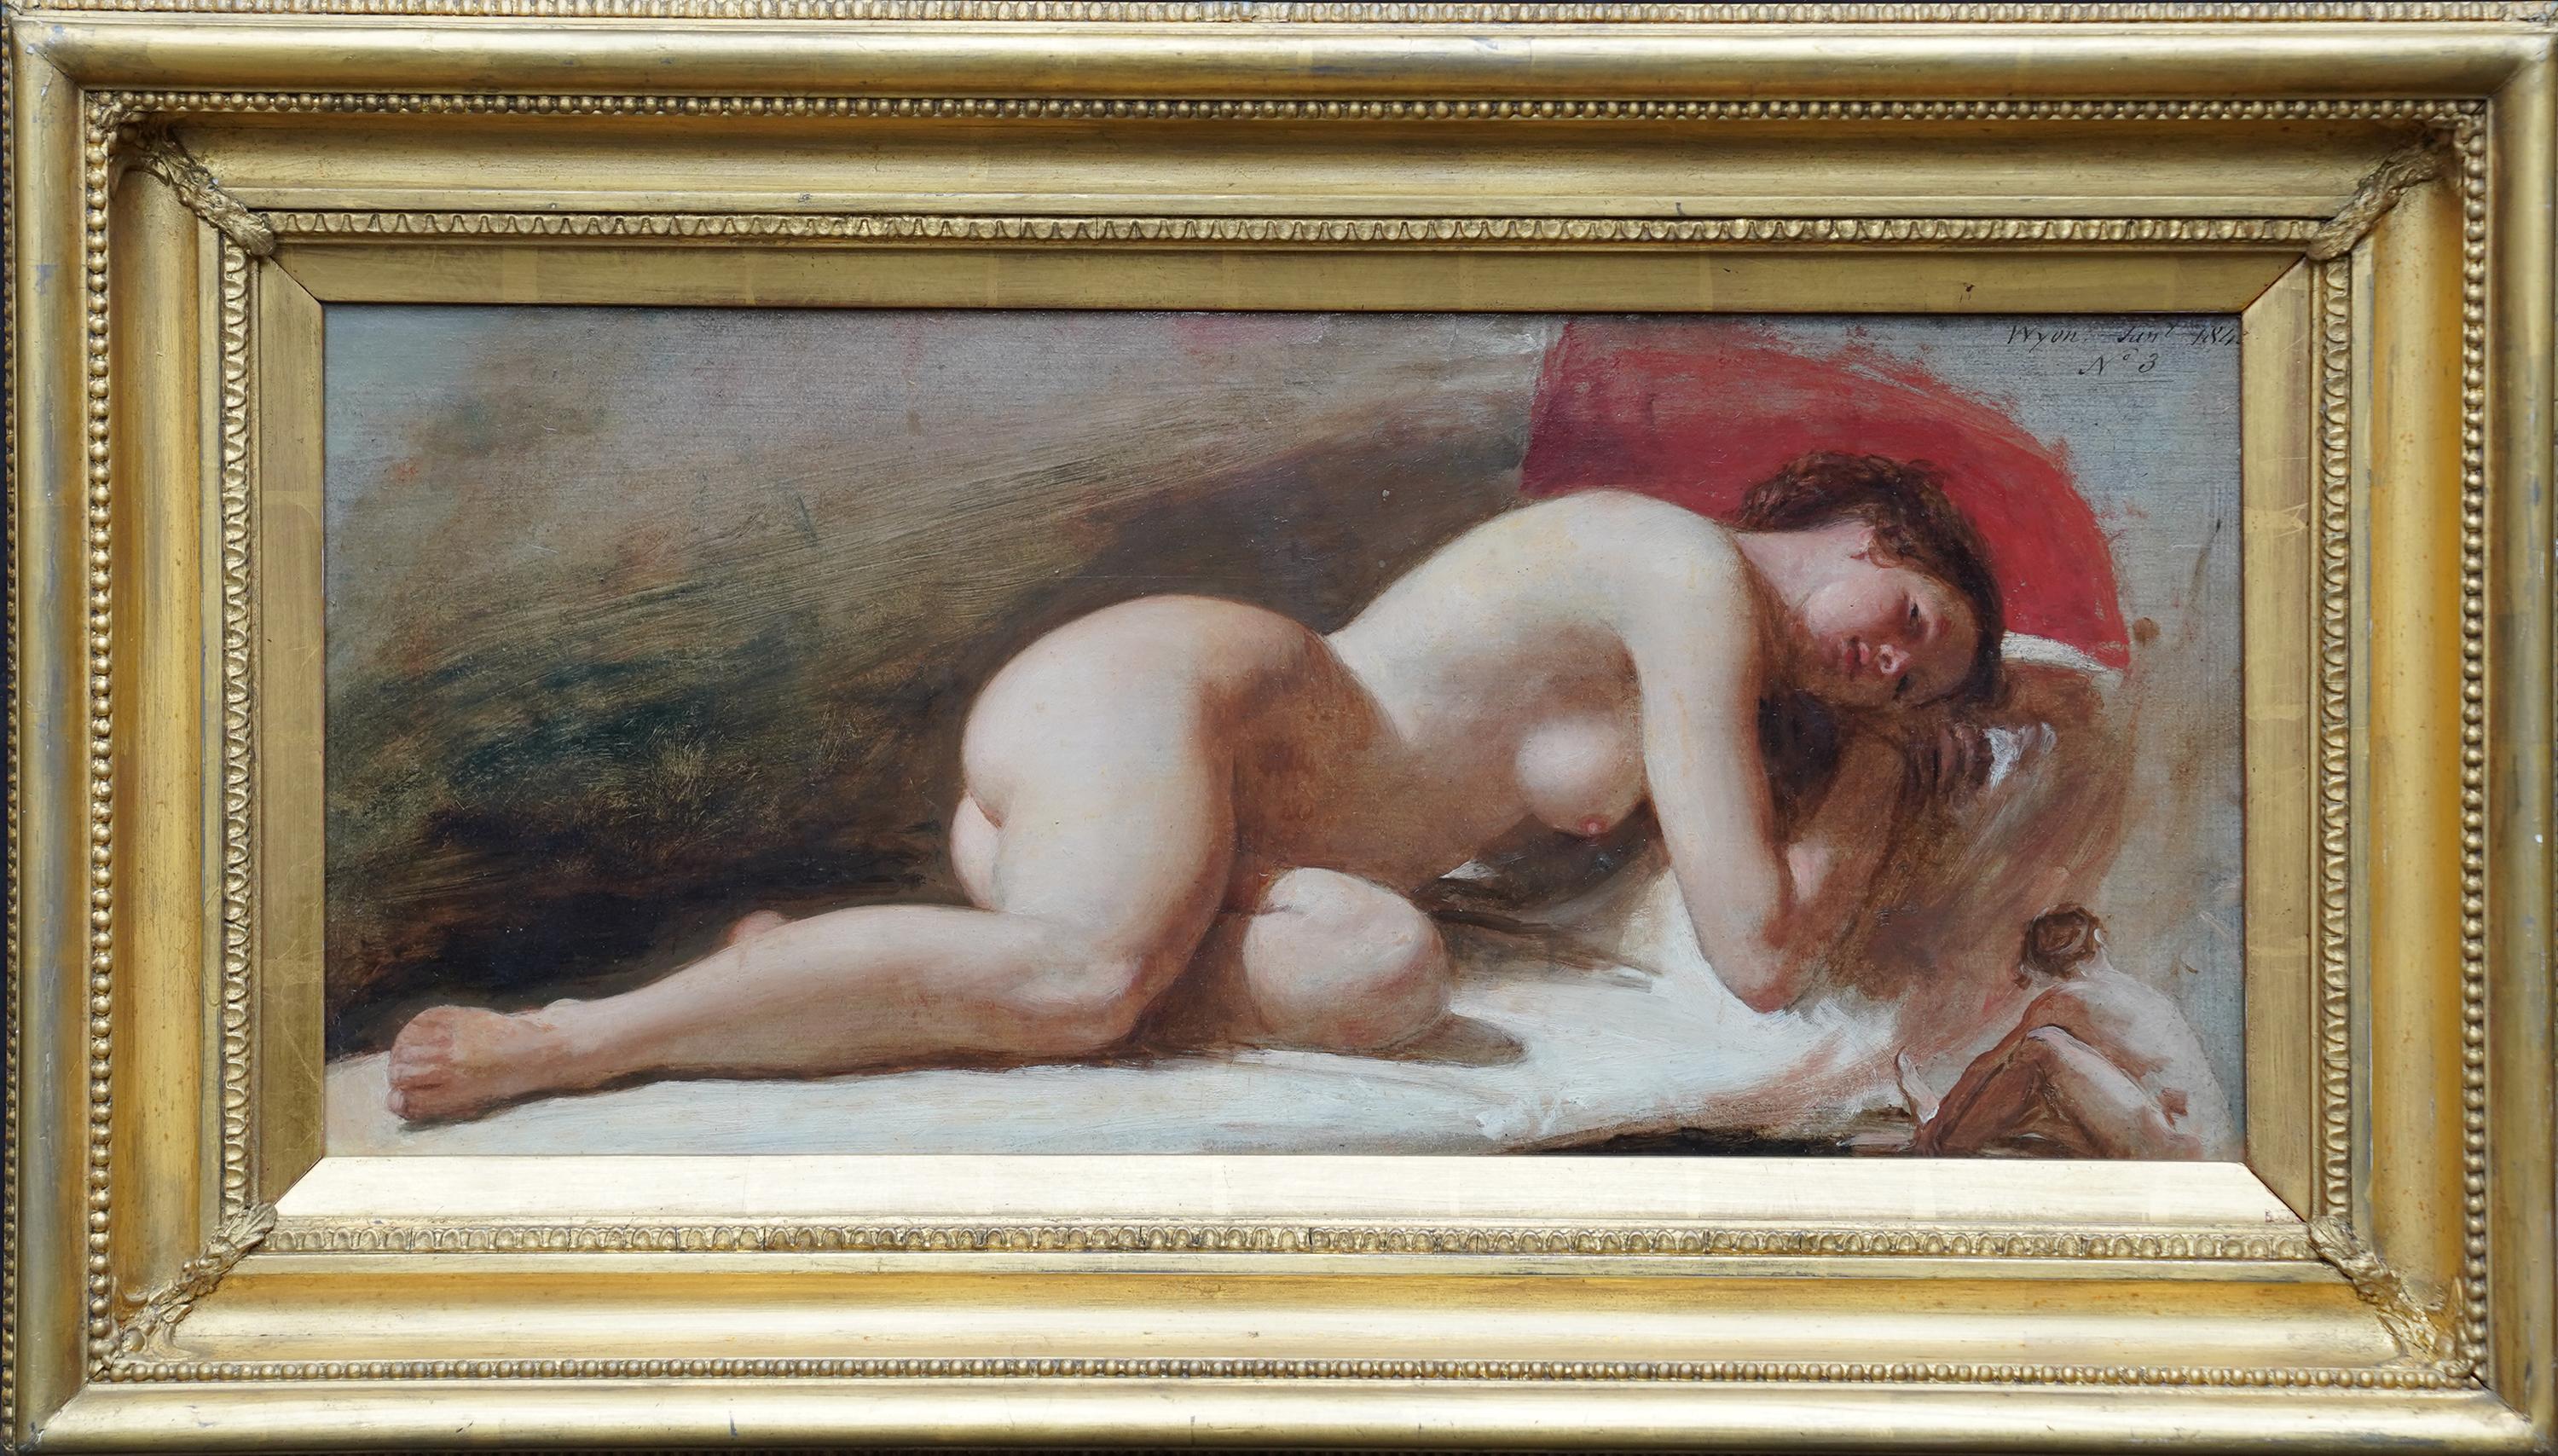 Nude Painting Edward William Wyon - Portrait de femme nue couchée - peinture à l'huile victorienne britannique du 19e siècle